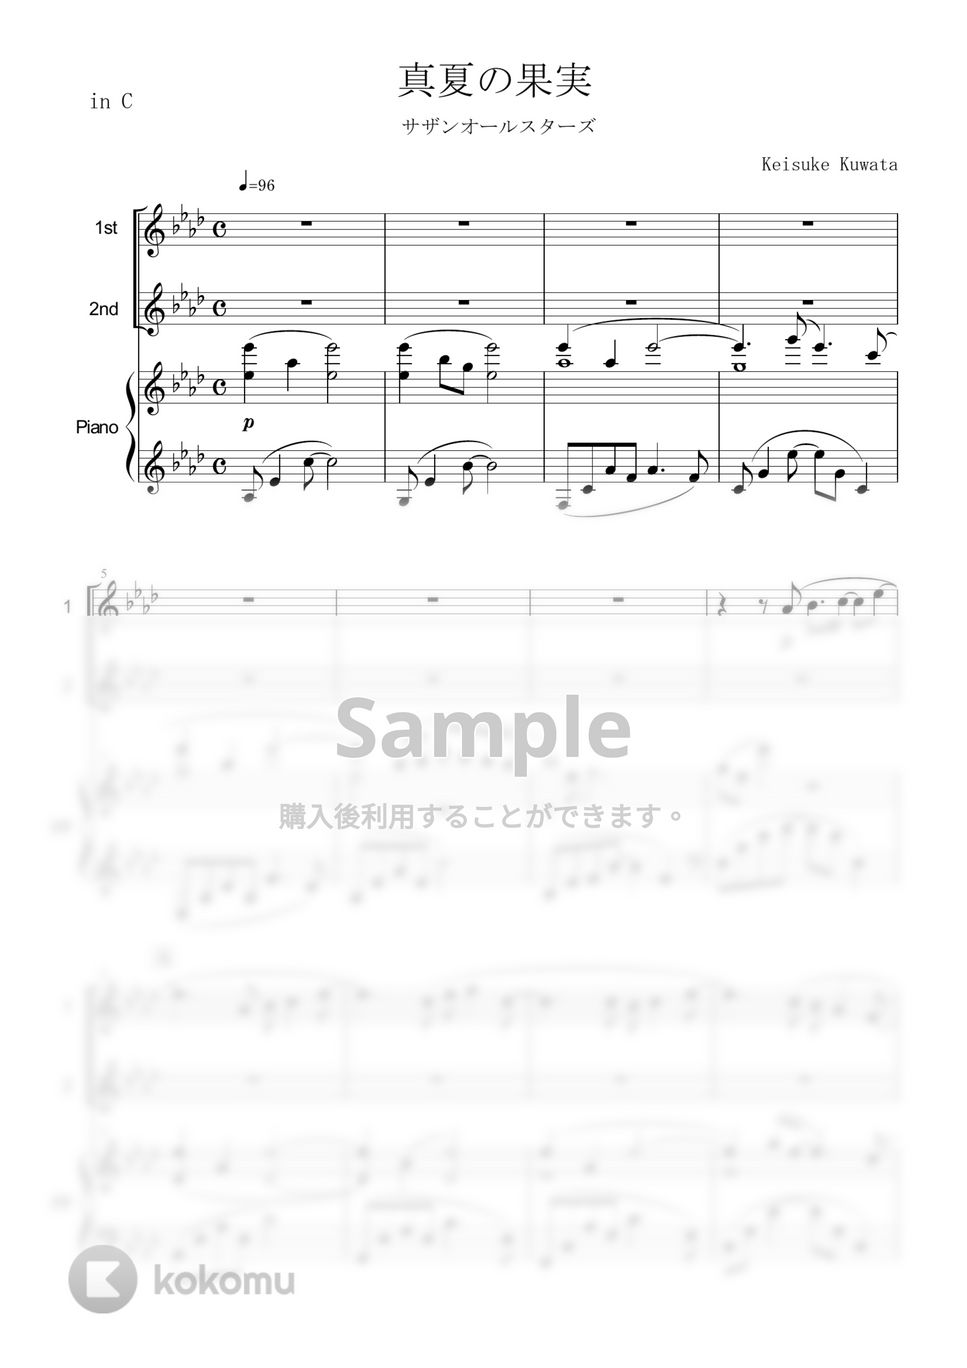 サザンオールスターズ - 真夏の果実 (in C/デュオ/フルート/オーボエ/ヴァイオリン/ピアノ伴奏) by enorisa